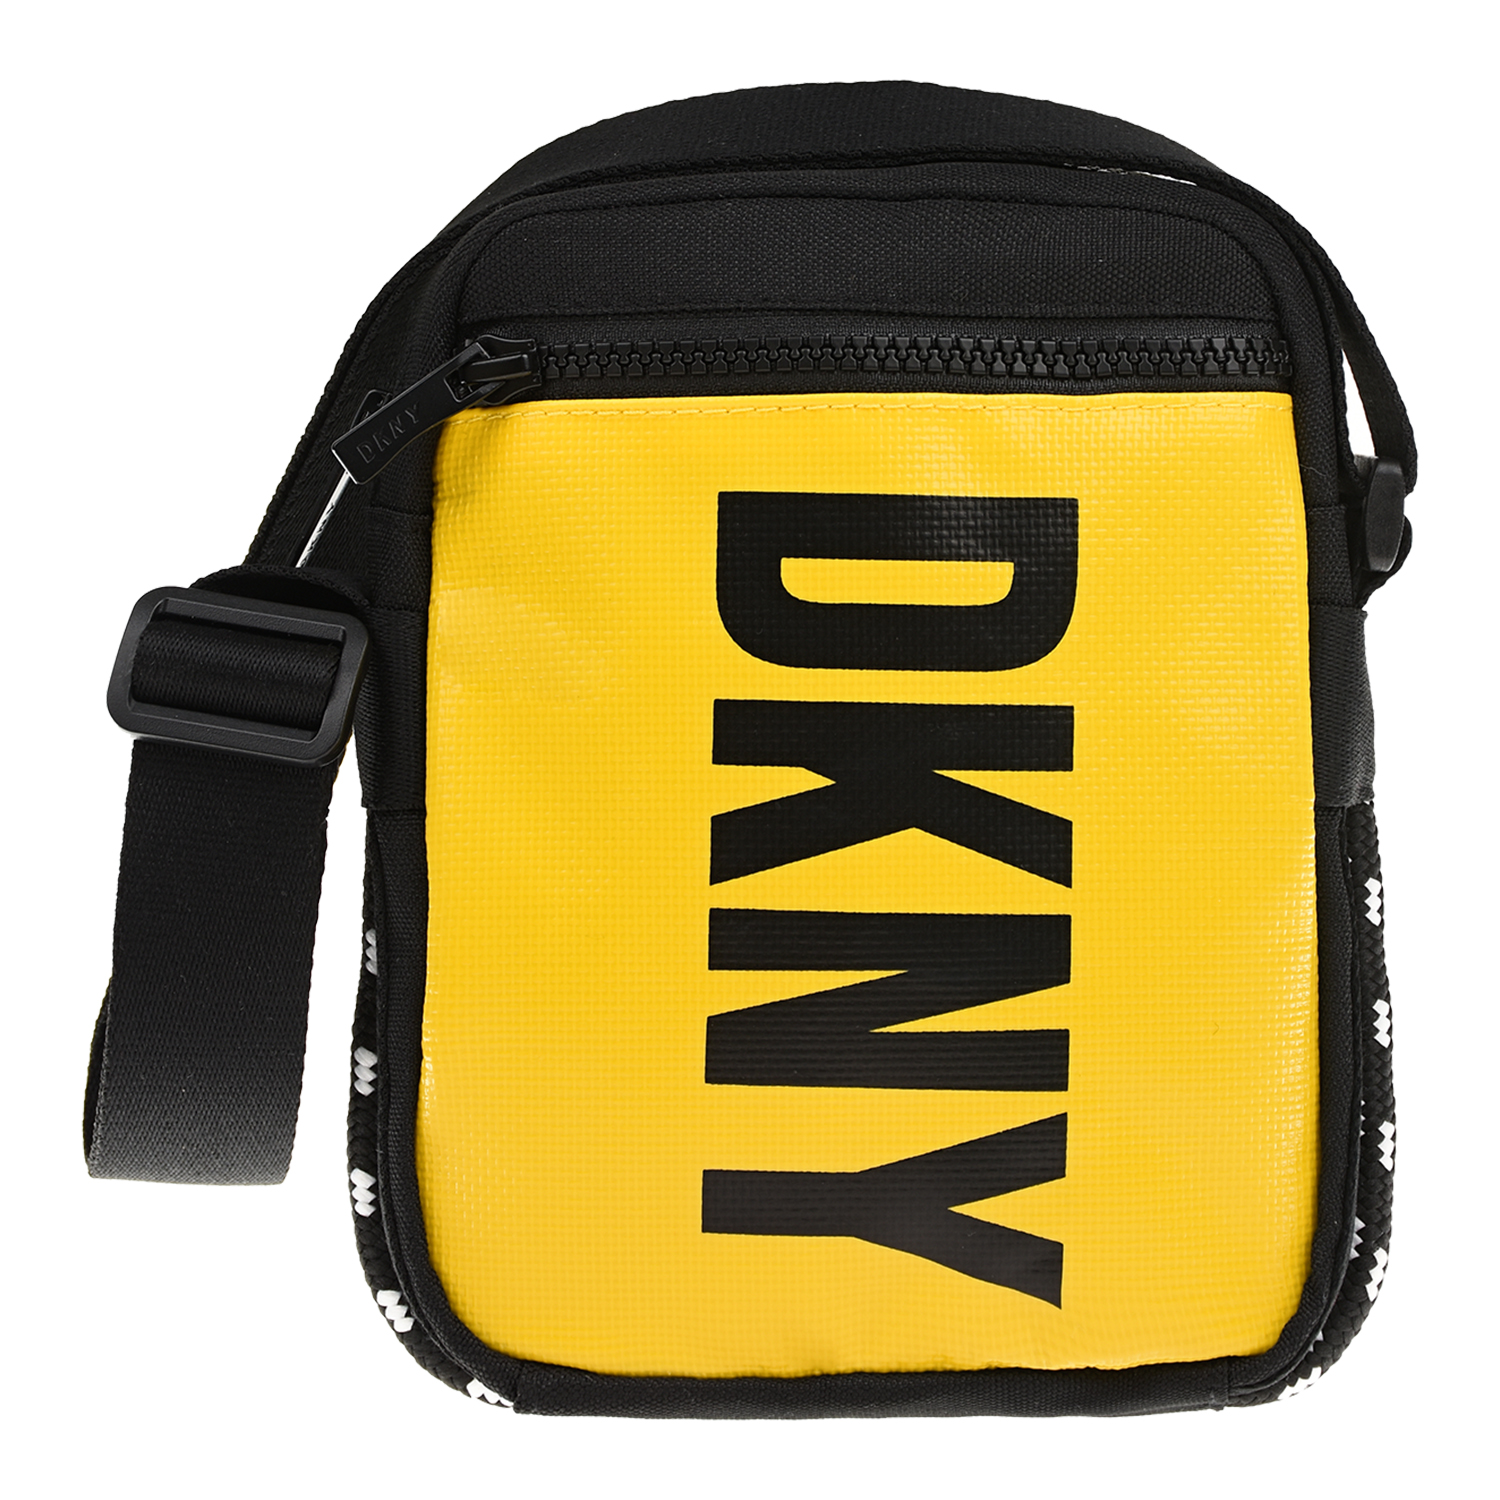 Желтая сумка с ремнем через плечо DKNY детская, размер unica, цвет желтый